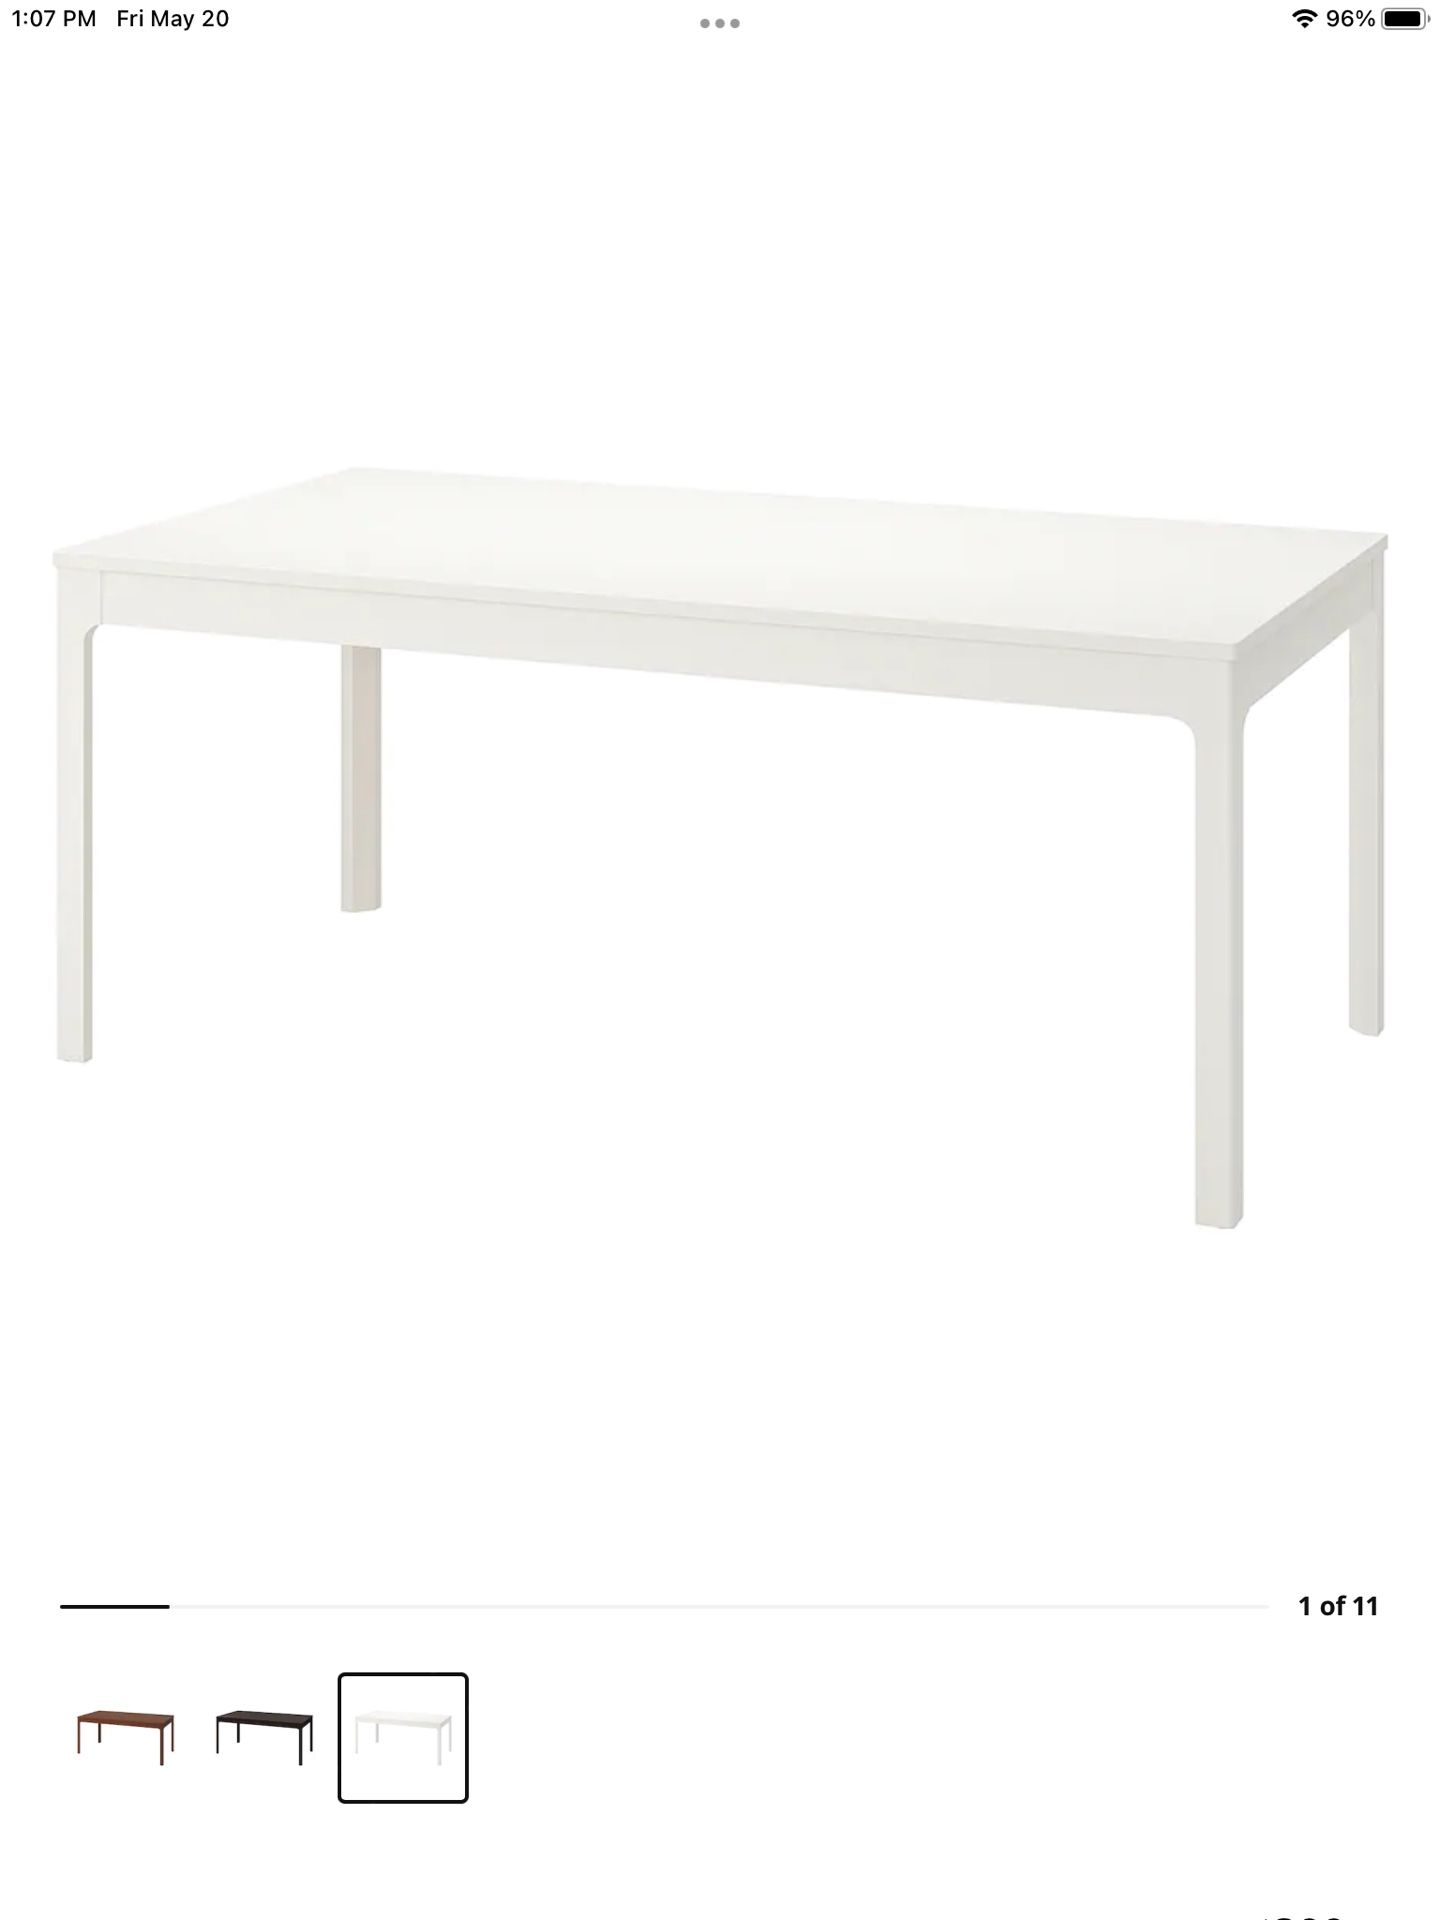 IKEA Expandable Dining Table - Ekedalan